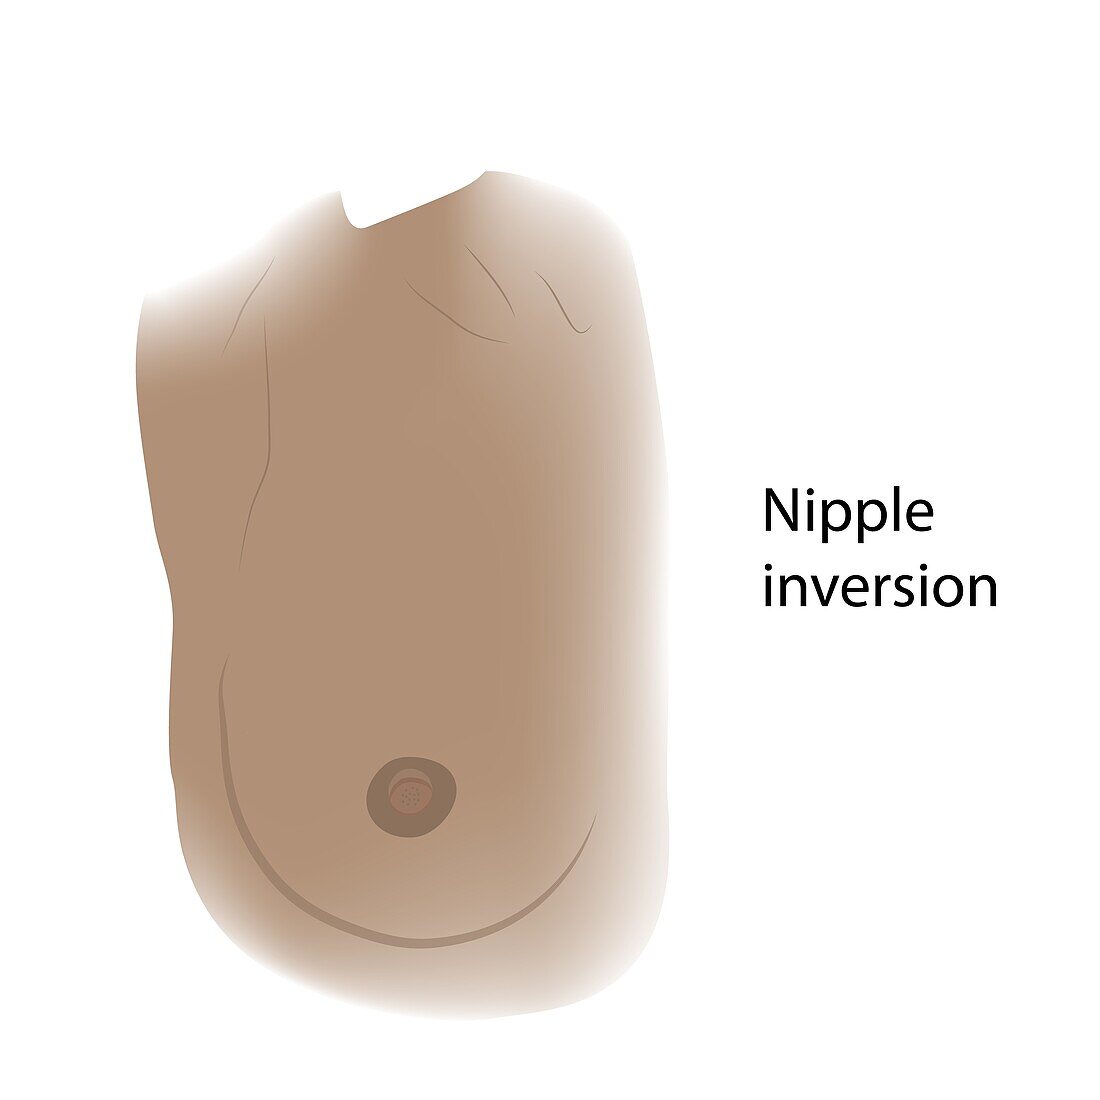 Nipple inversion of female breast, illustration